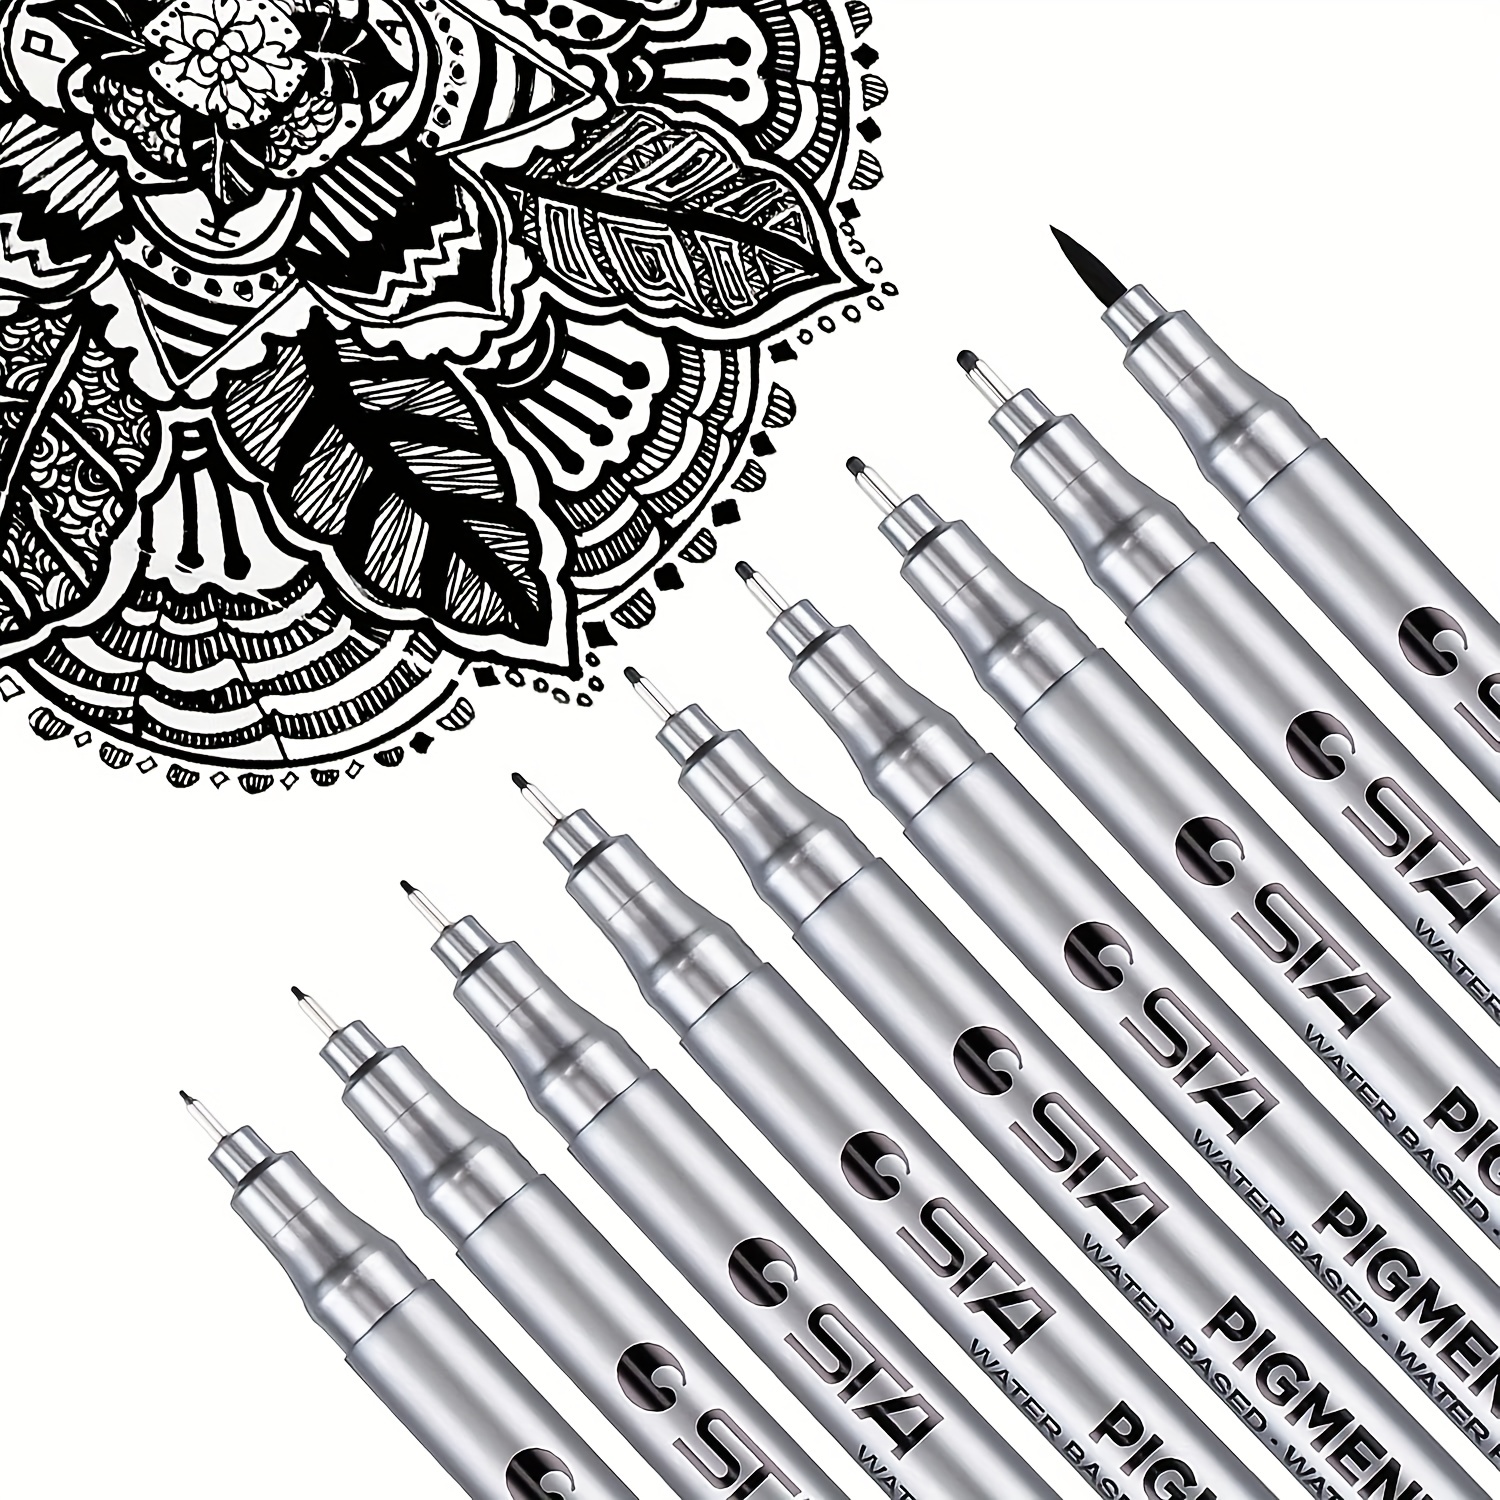 Micro Fineliner Drawing Art Pens: 6/12 Black Fine Line Waterproof